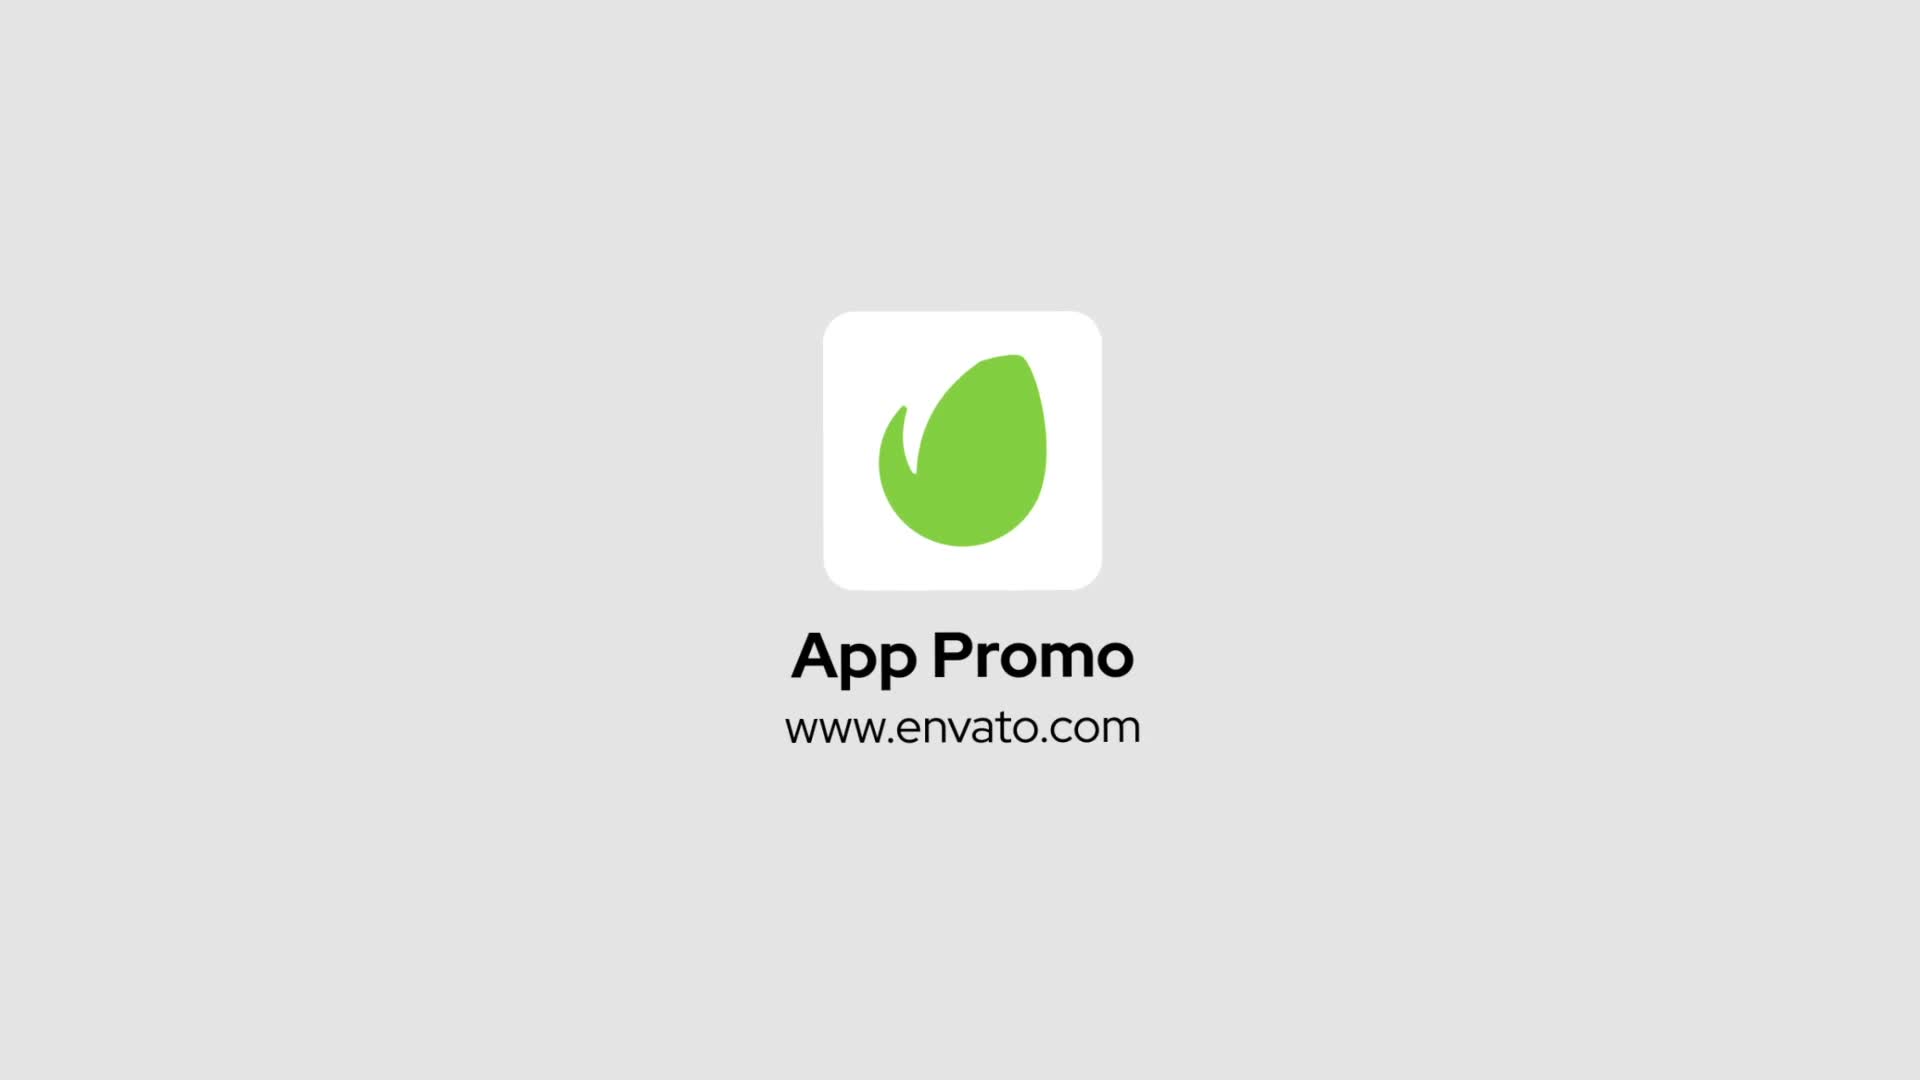 Mobile App Promo for Premiere Pro Videohive 35682088 Premiere Pro Image 1